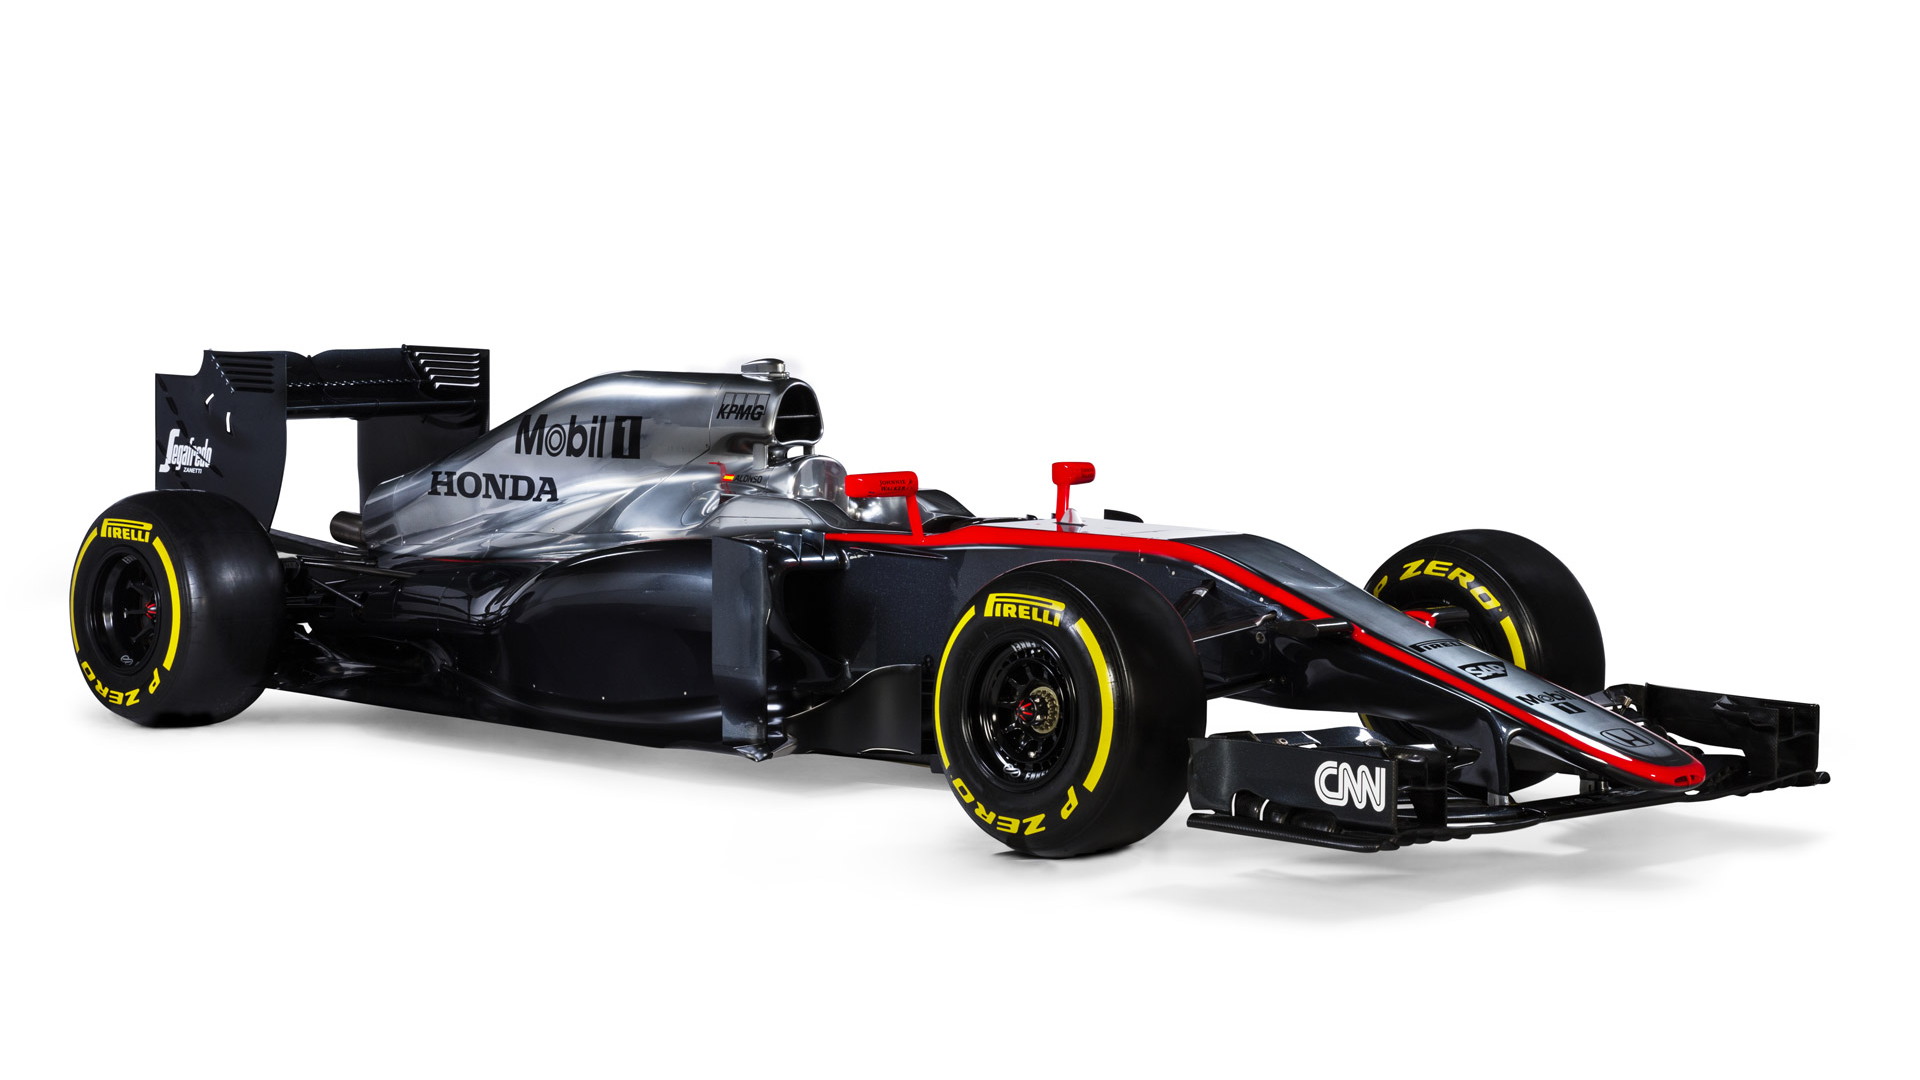 McLaren MP4-30 2015 Formula One car